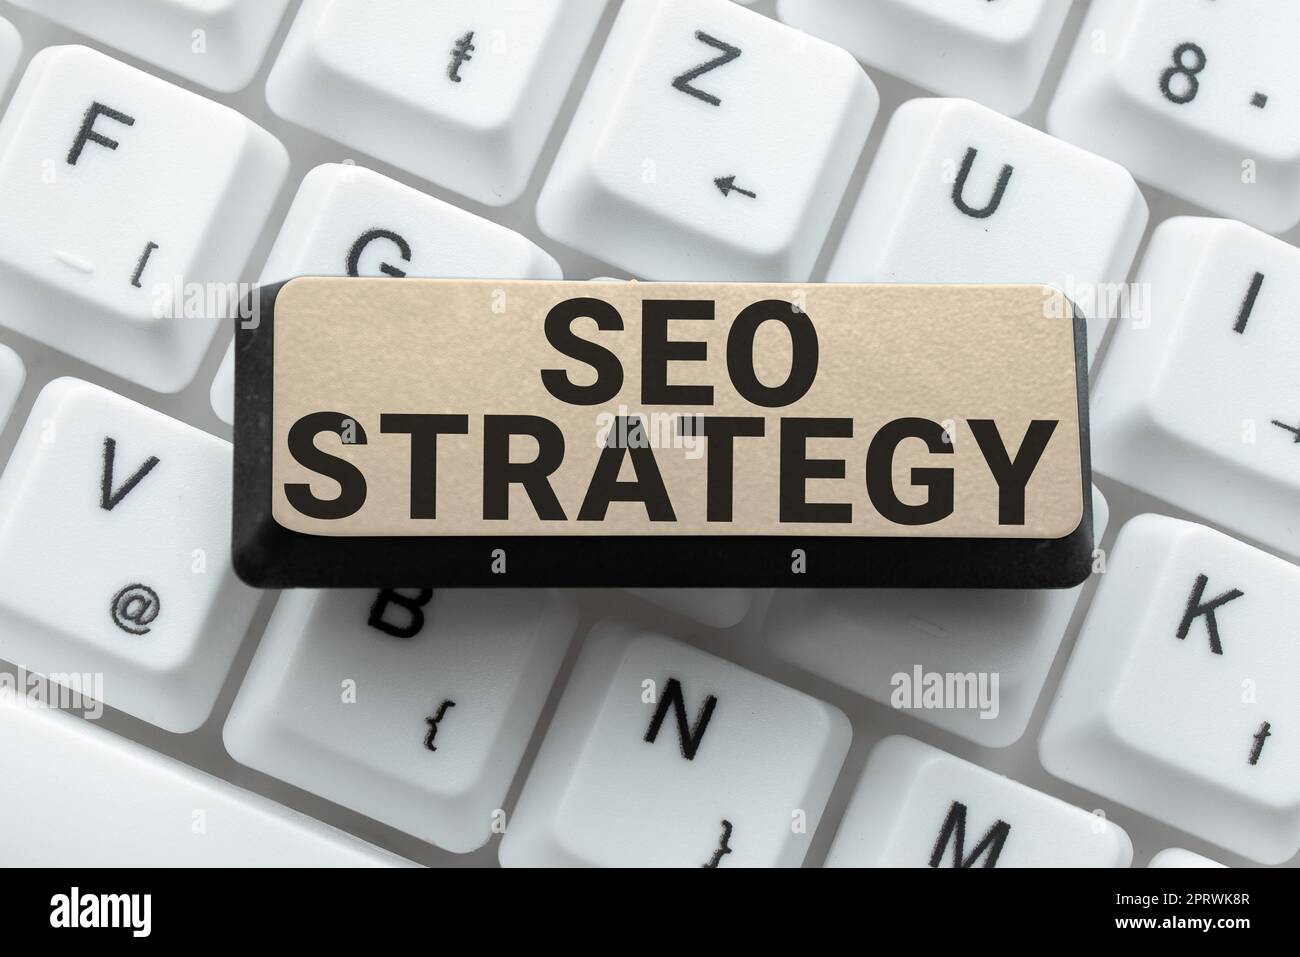 Textunterschrift mit Darstellung der Seo-Strategie. Business-Ansatz Techniken und Taktiken, um die Besucher einer Website zu erhöhen Stockfoto